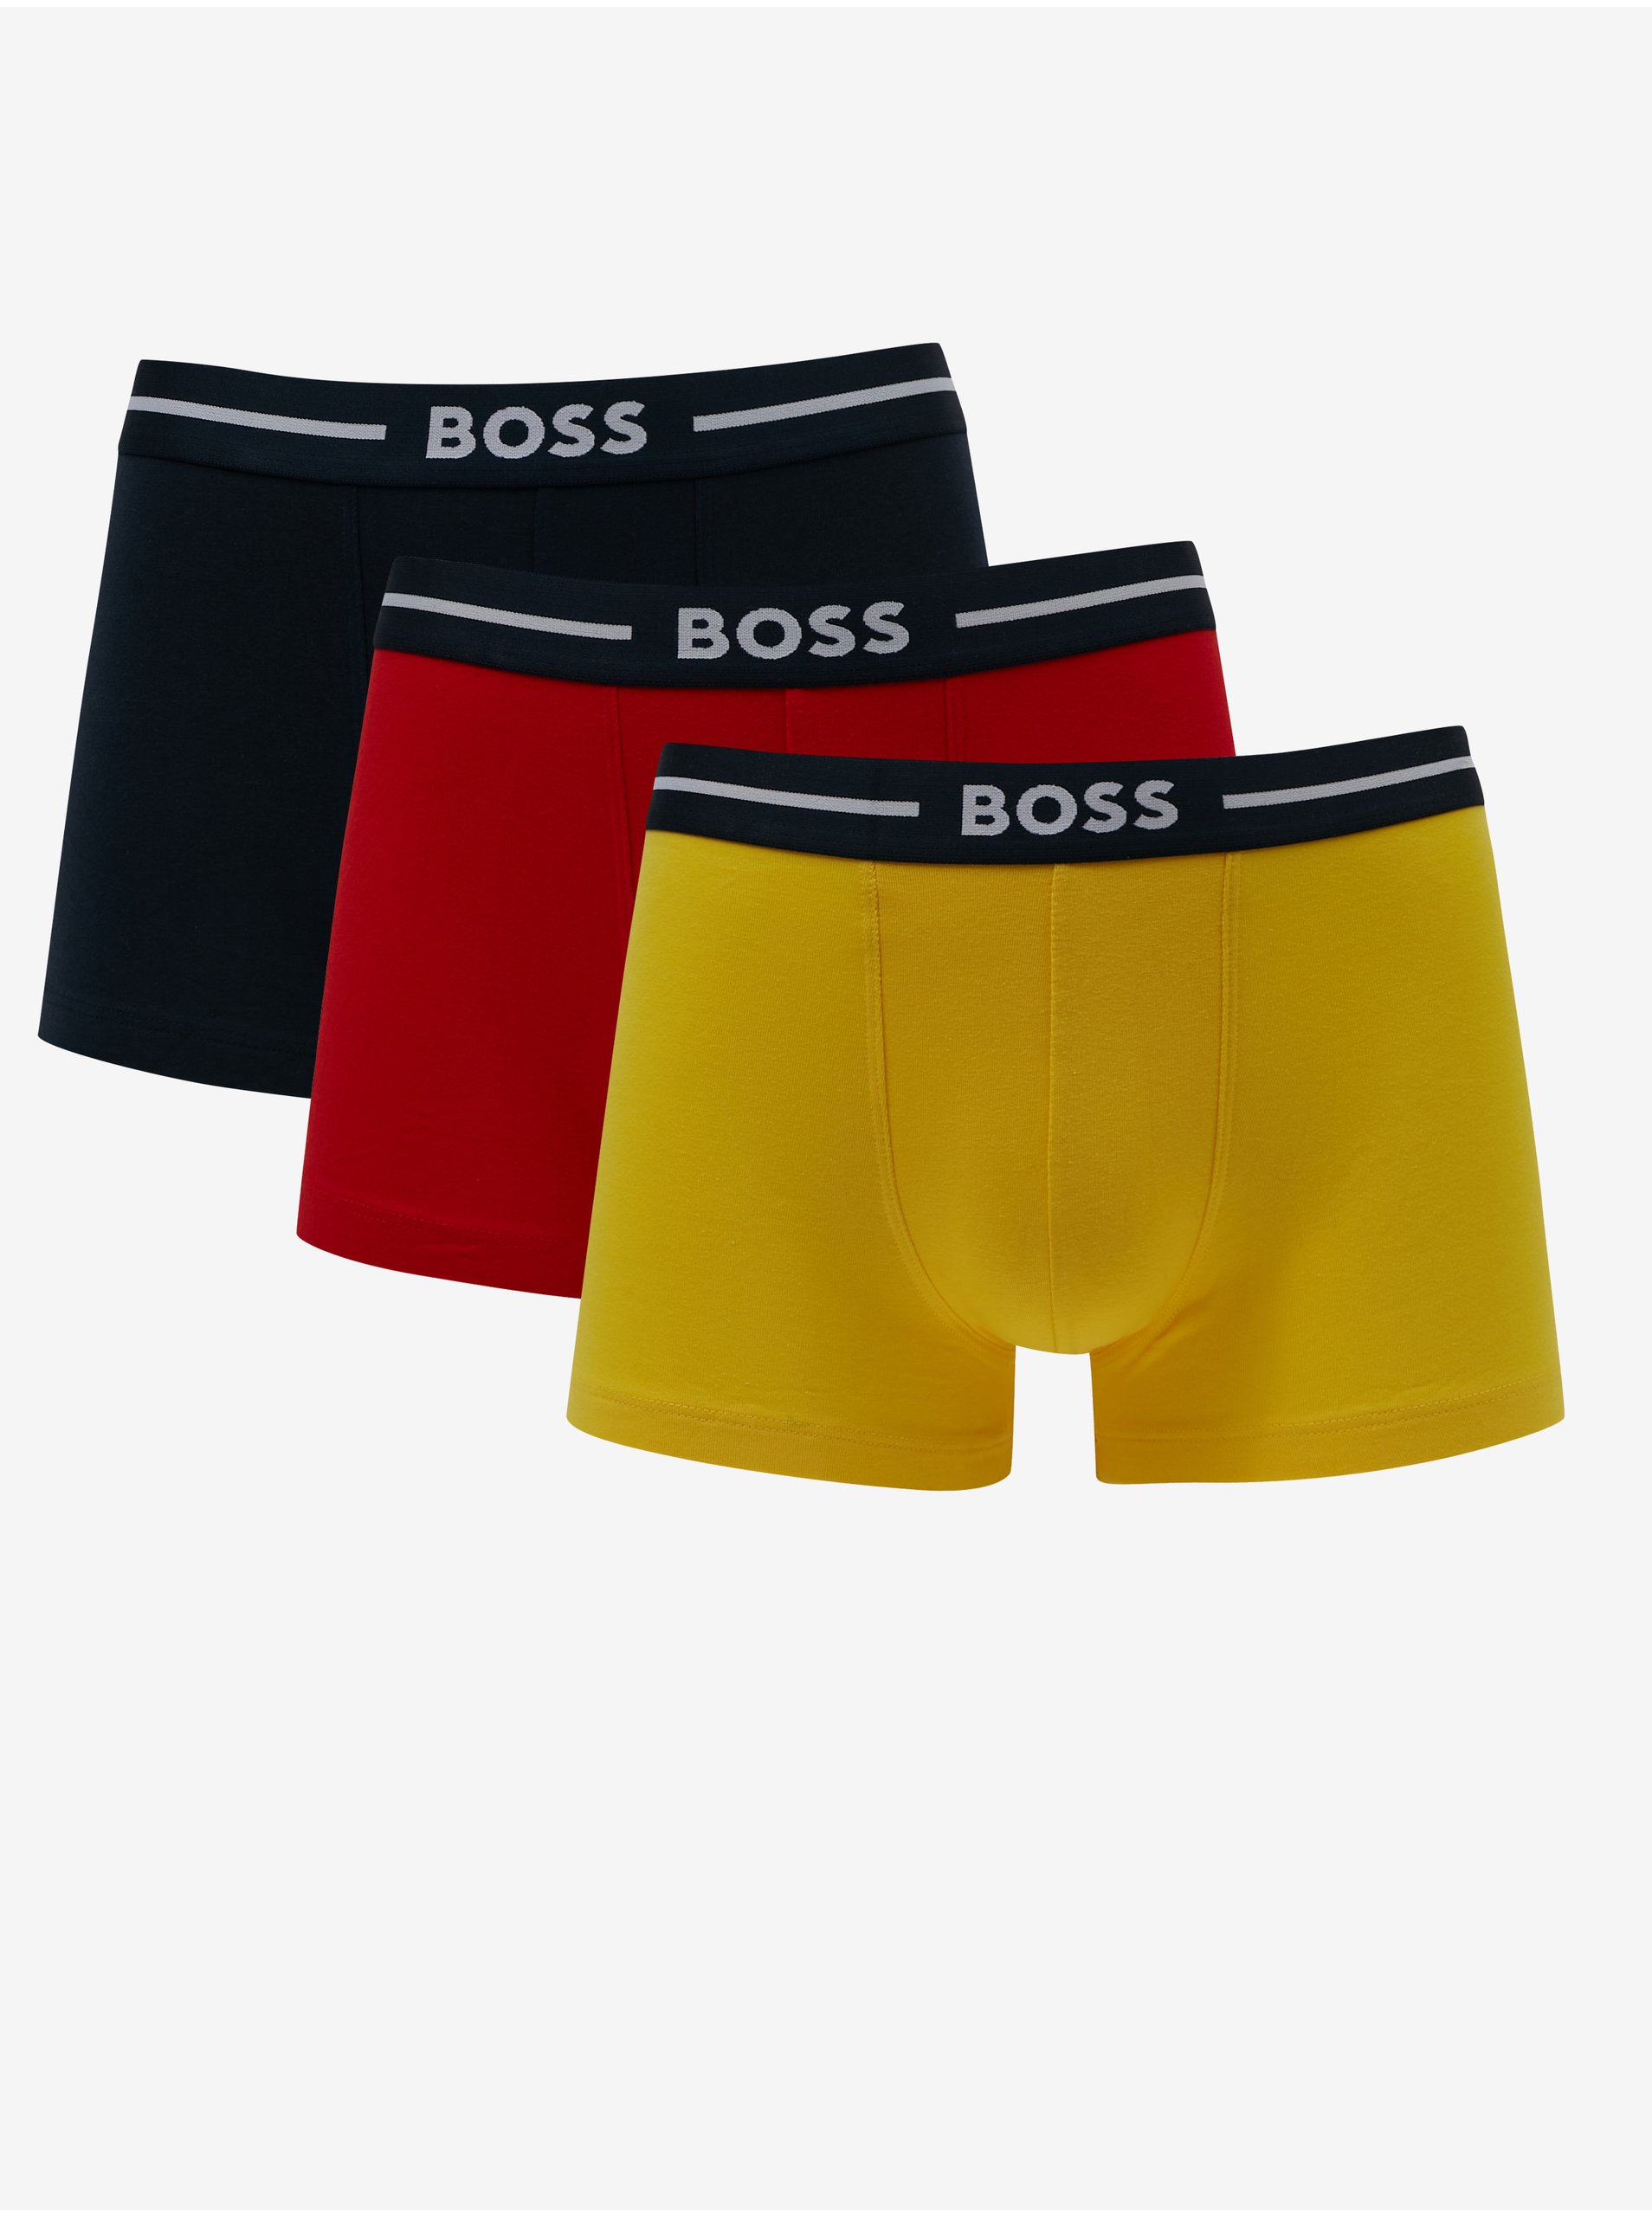 Lacno Boxerky pre mužov BOSS - čierna, červená, žltá